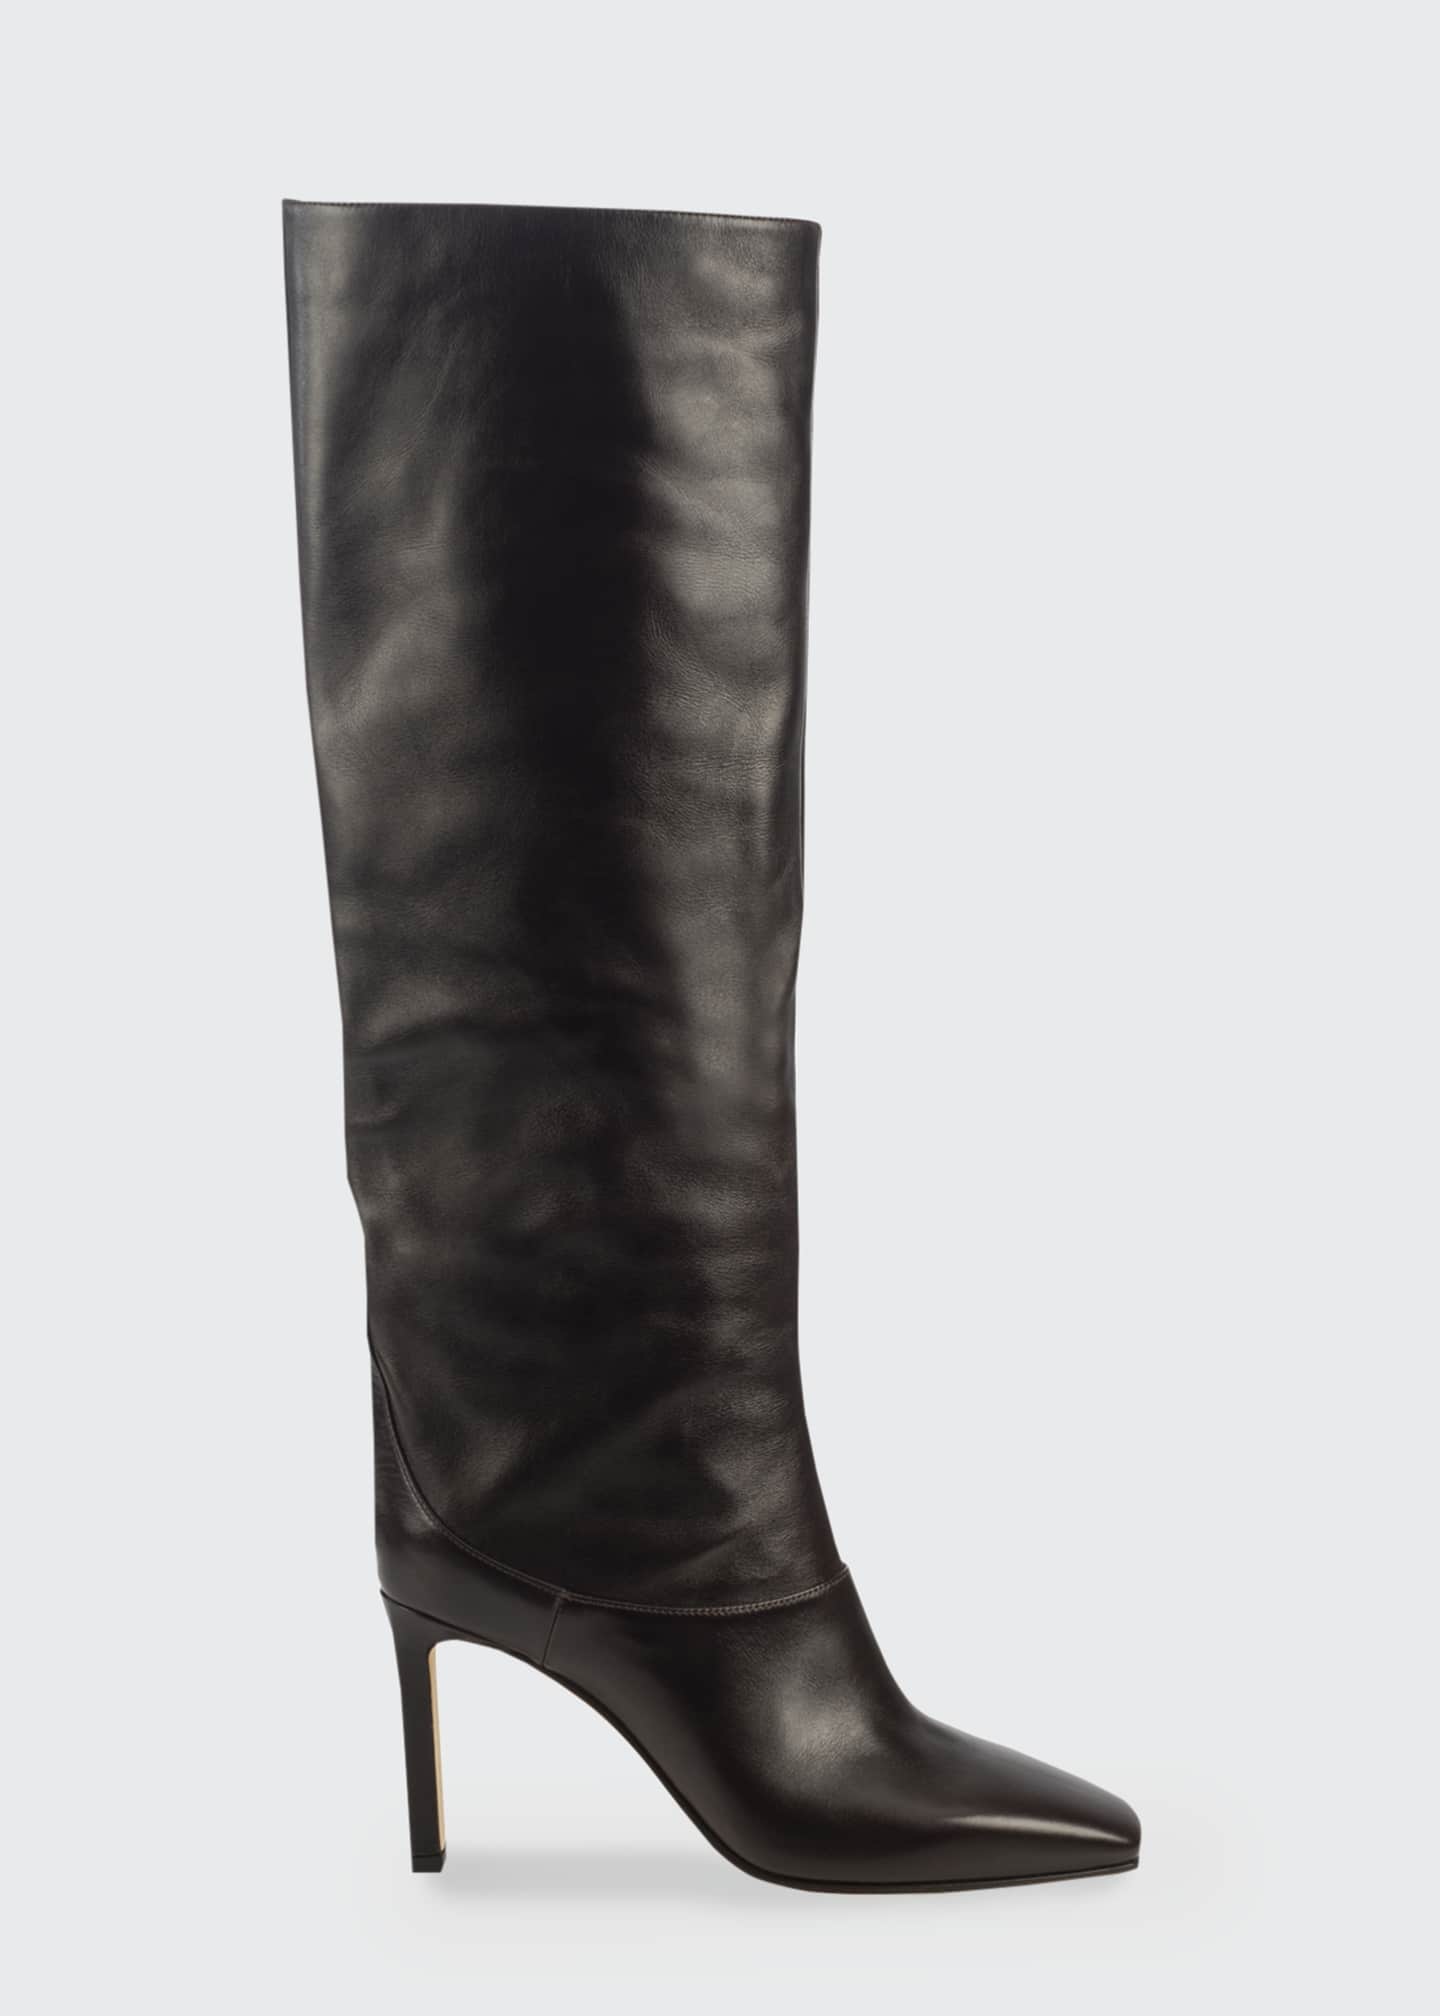 Jimmy Choo 85mm Mahesa Tall Leather Boots - Bergdorf Goodman